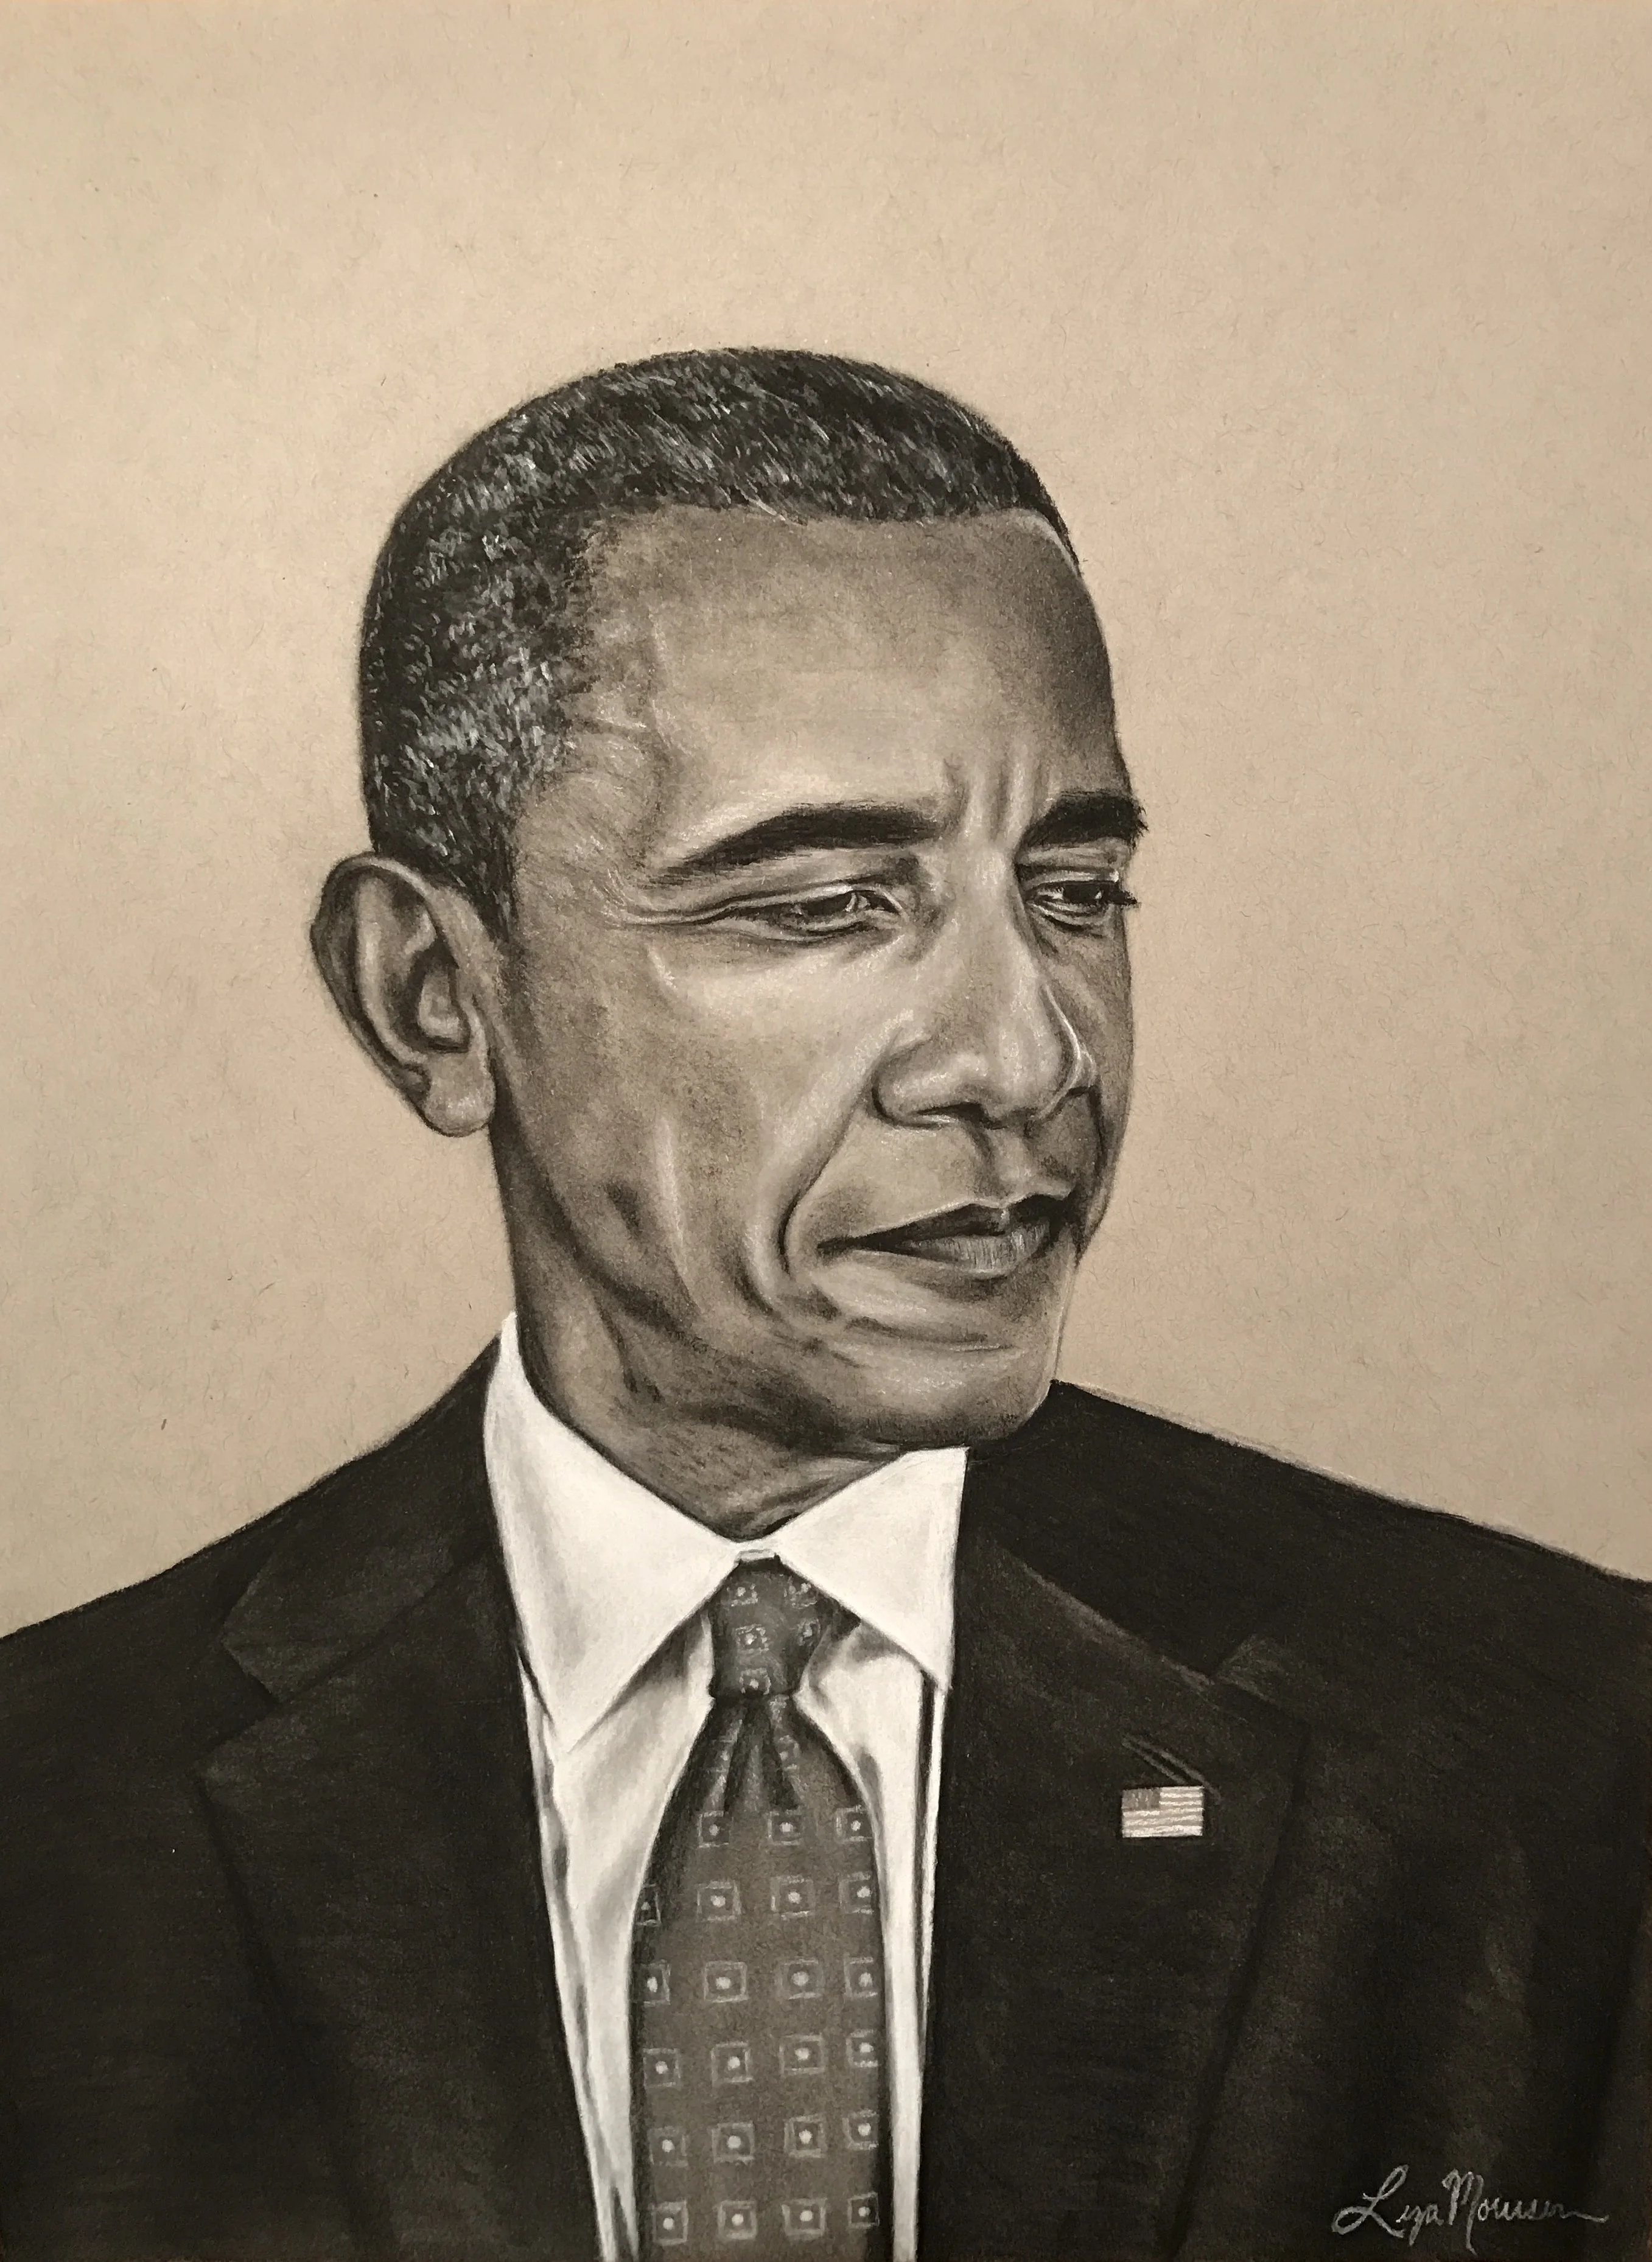 Drawing of Obama